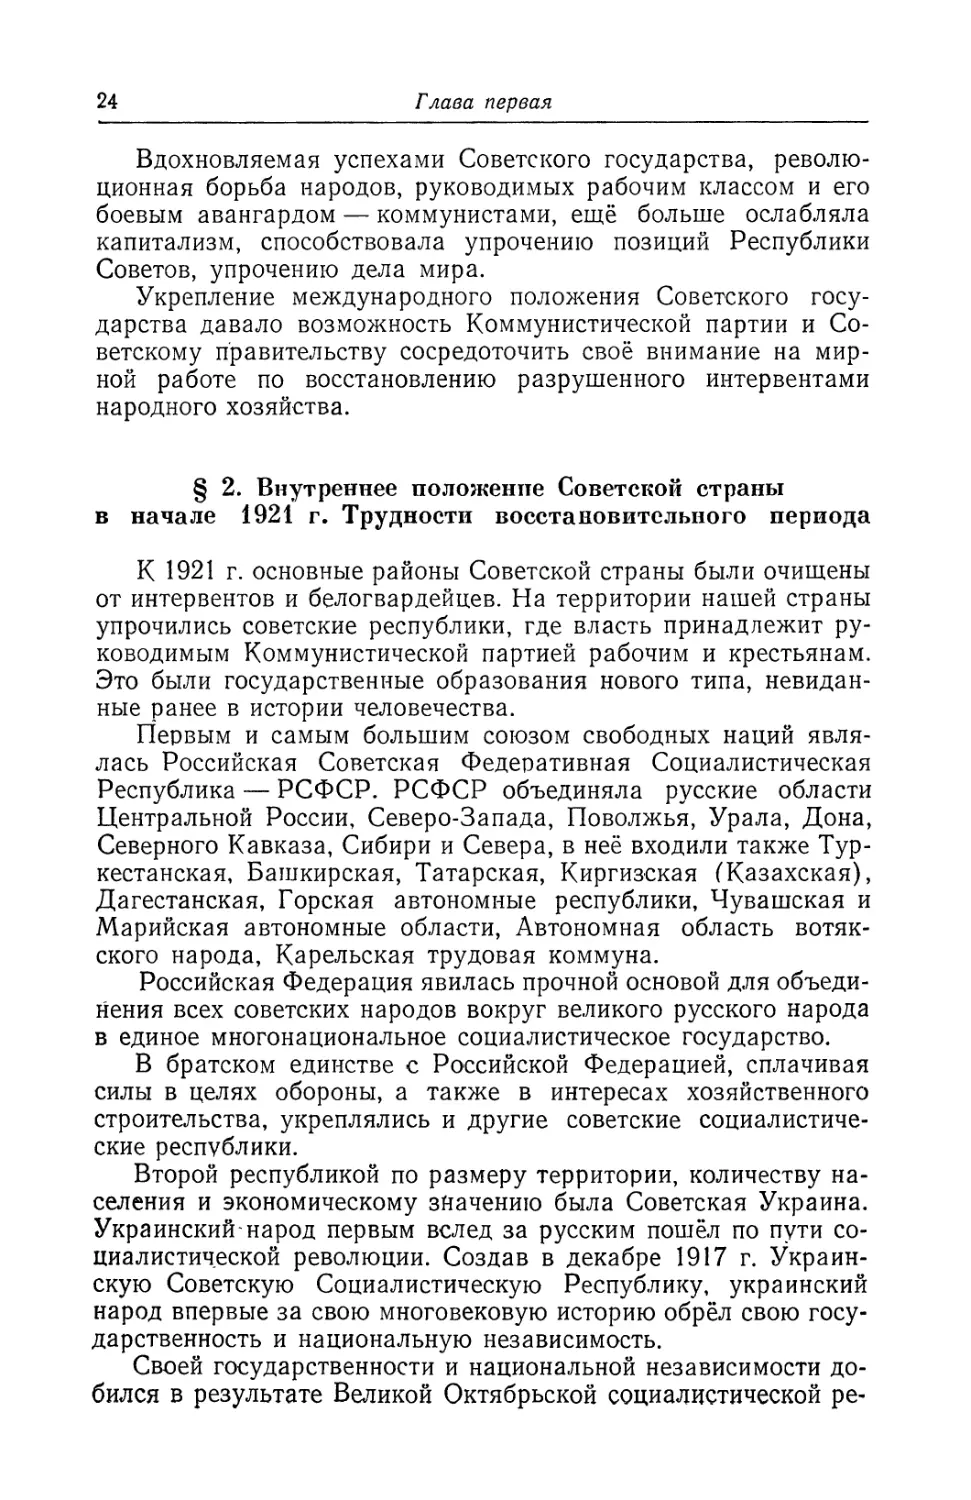 § 2. Внутреннее положение Советской страны в начале 1921 г. Трудности восстановительного периода